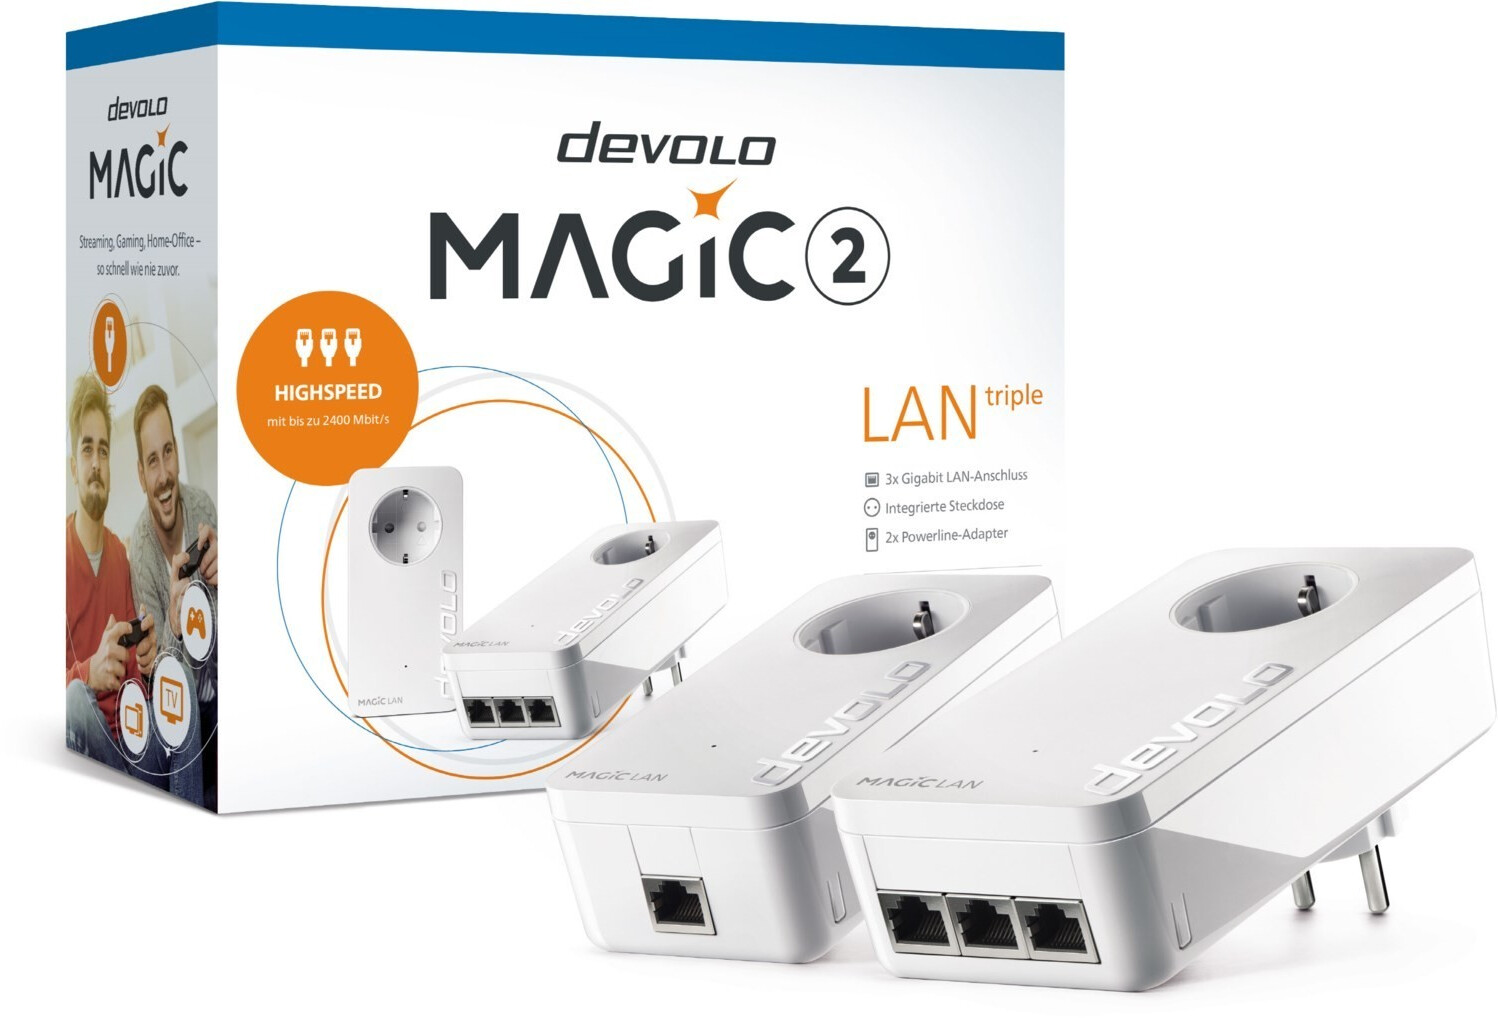 devolo Magic 2 LAN triple Starter Kit au meilleur prix sur